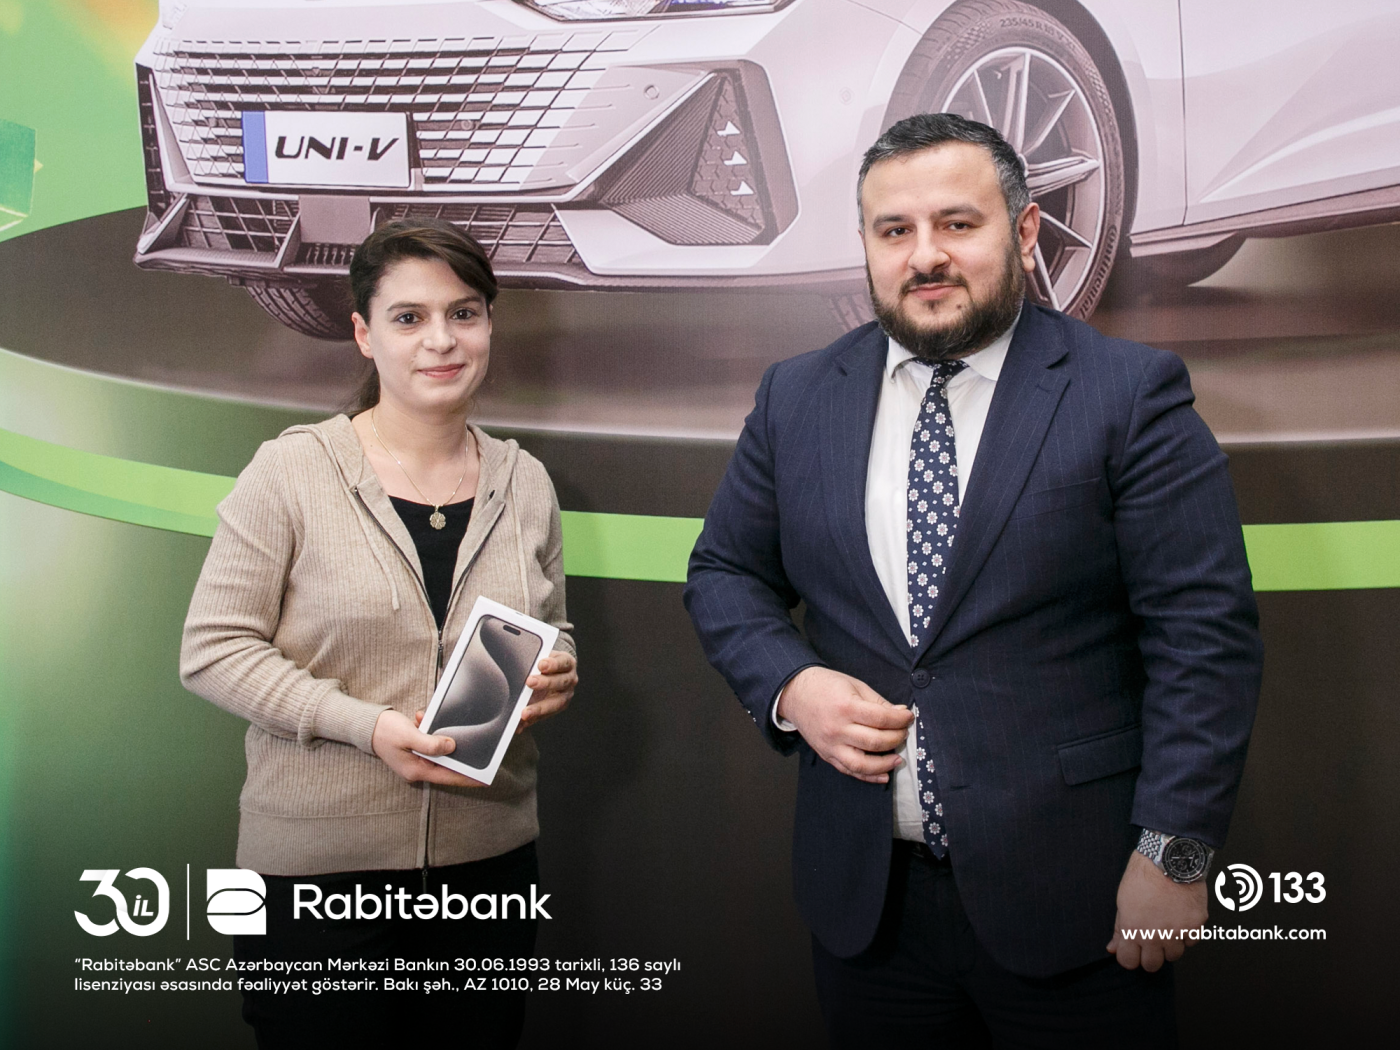 "Rabita Mobile ilə ödə və hədiyyələr qazan" lotereyasının qaliblərinə hədiyyələr təqdim edildi  - FOTOLAR